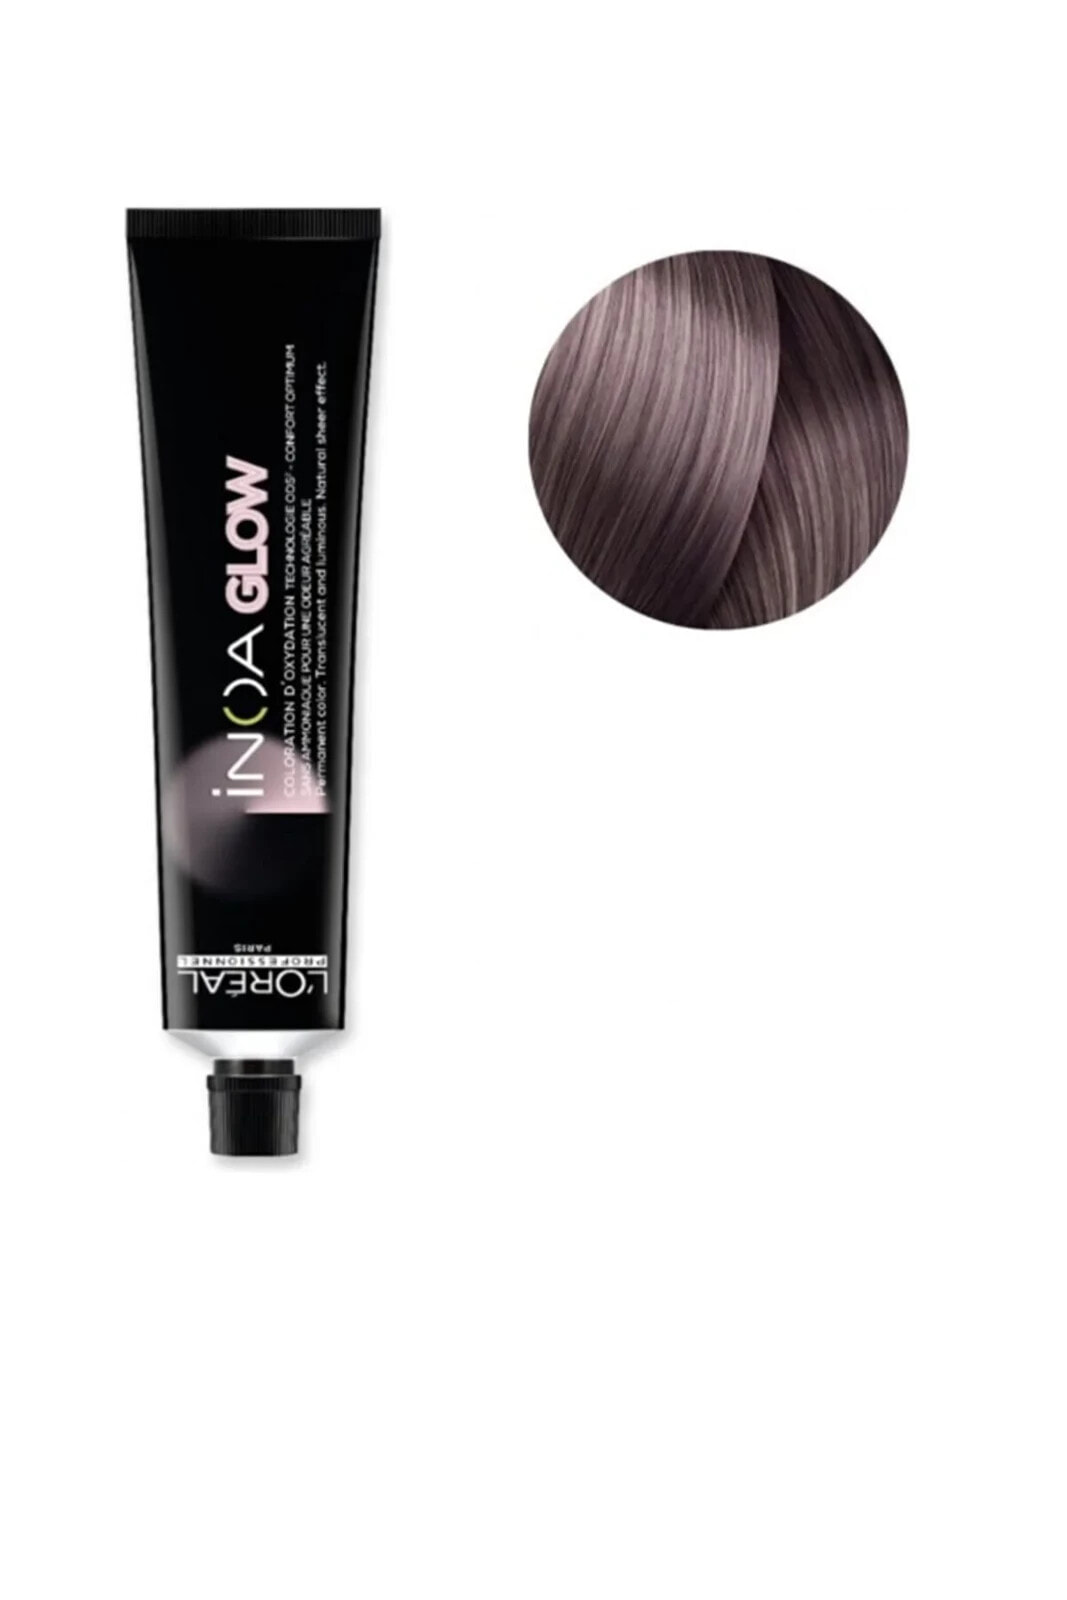 Inoa Glow Amonyaksız Saç Boyası 60ml .21